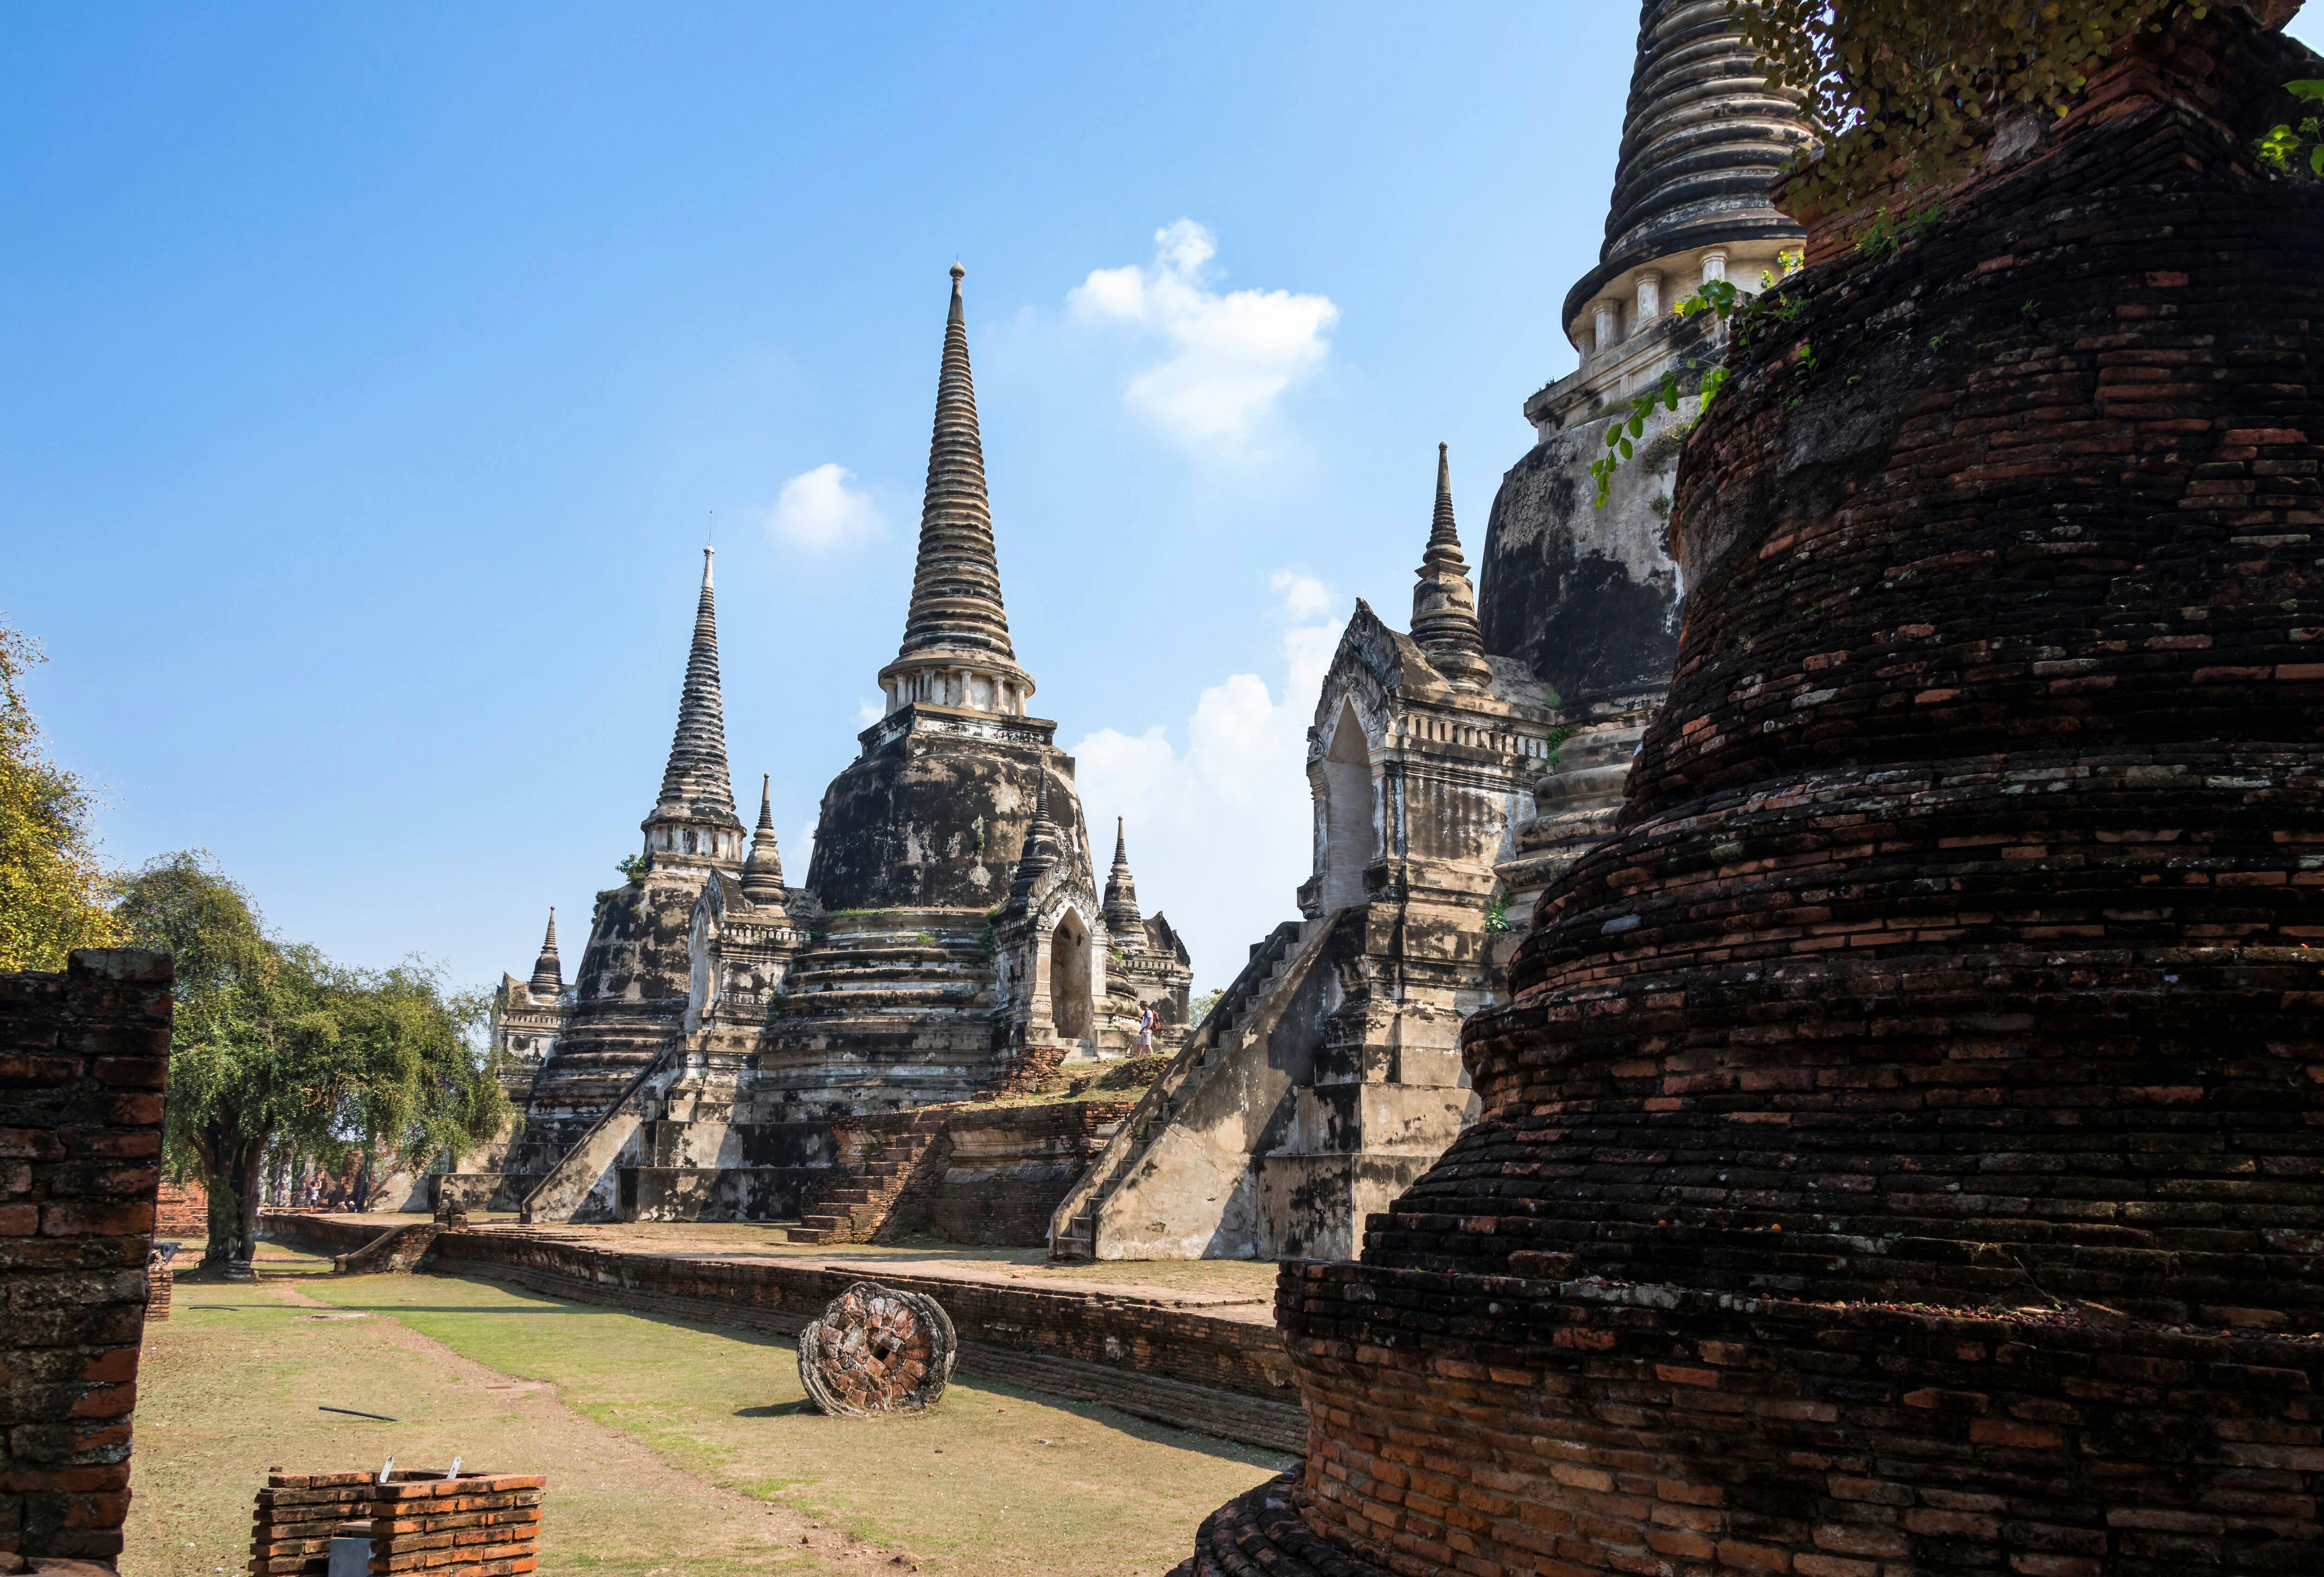 Visita al parque histórico de Ayutthaya